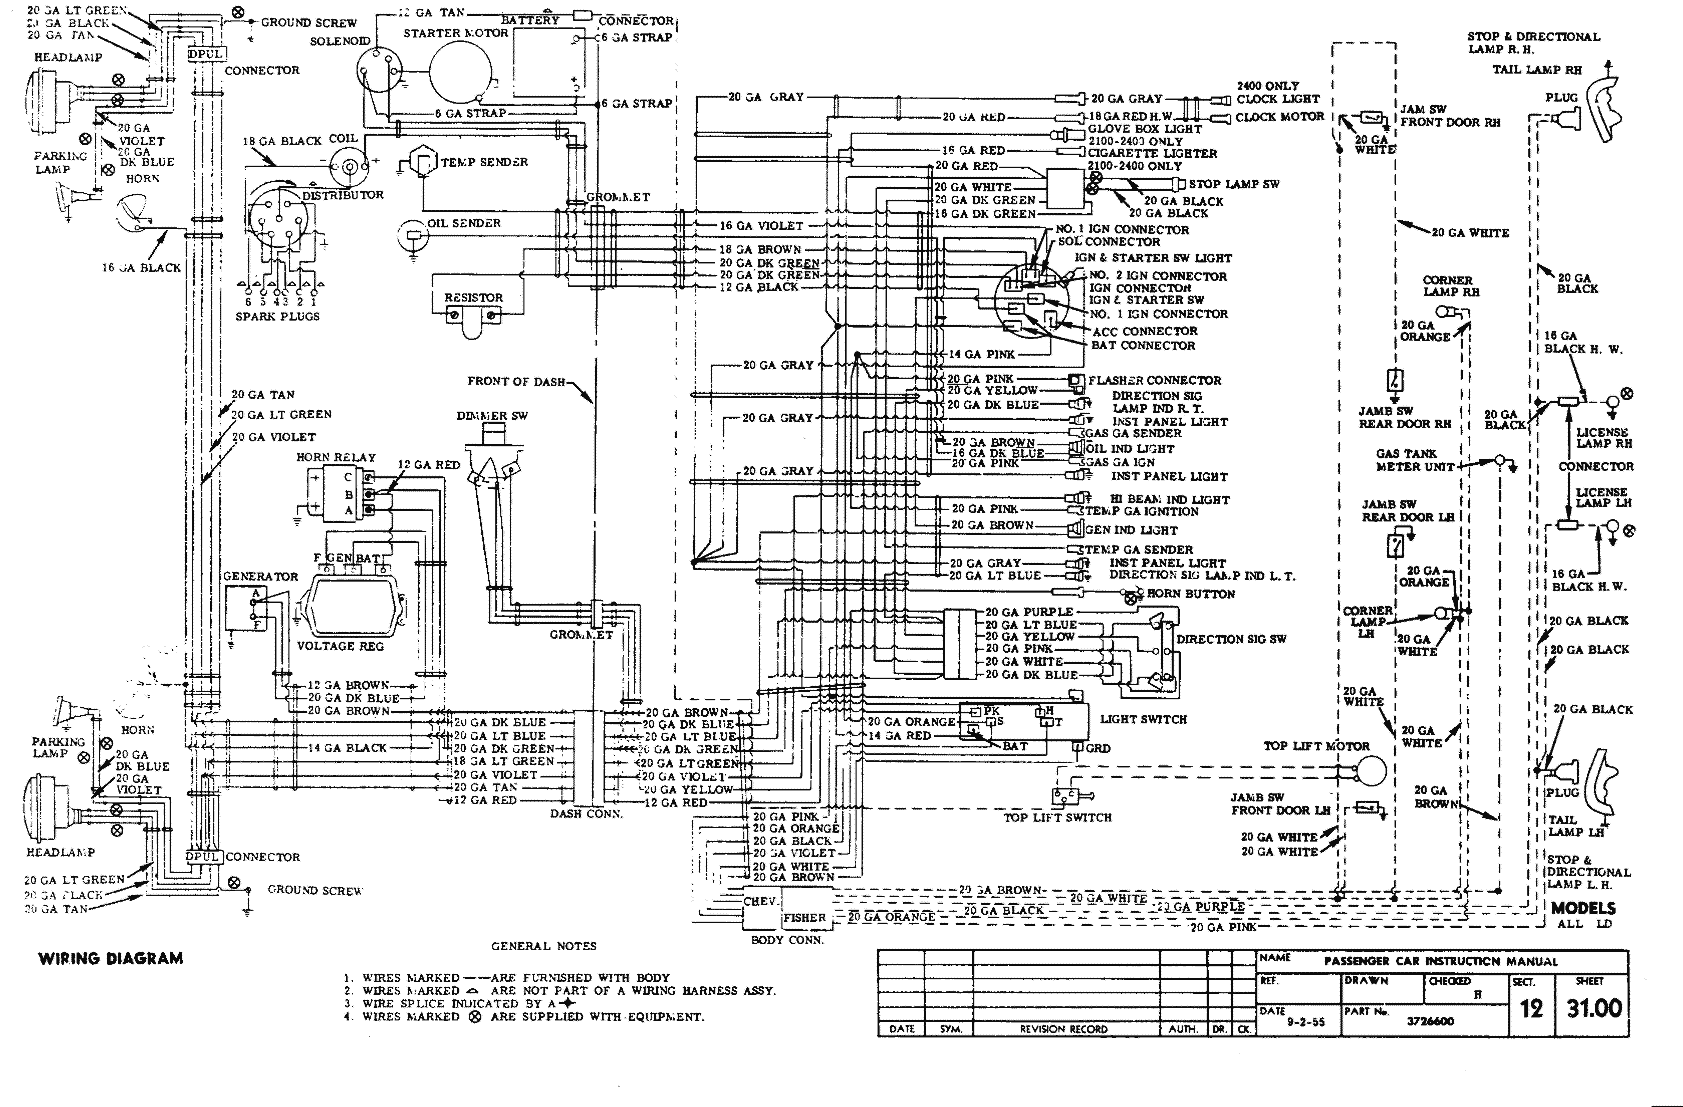 1979 Chevrolet Truck Wiper Wiring Diagram - Wiring Diagram Schemas